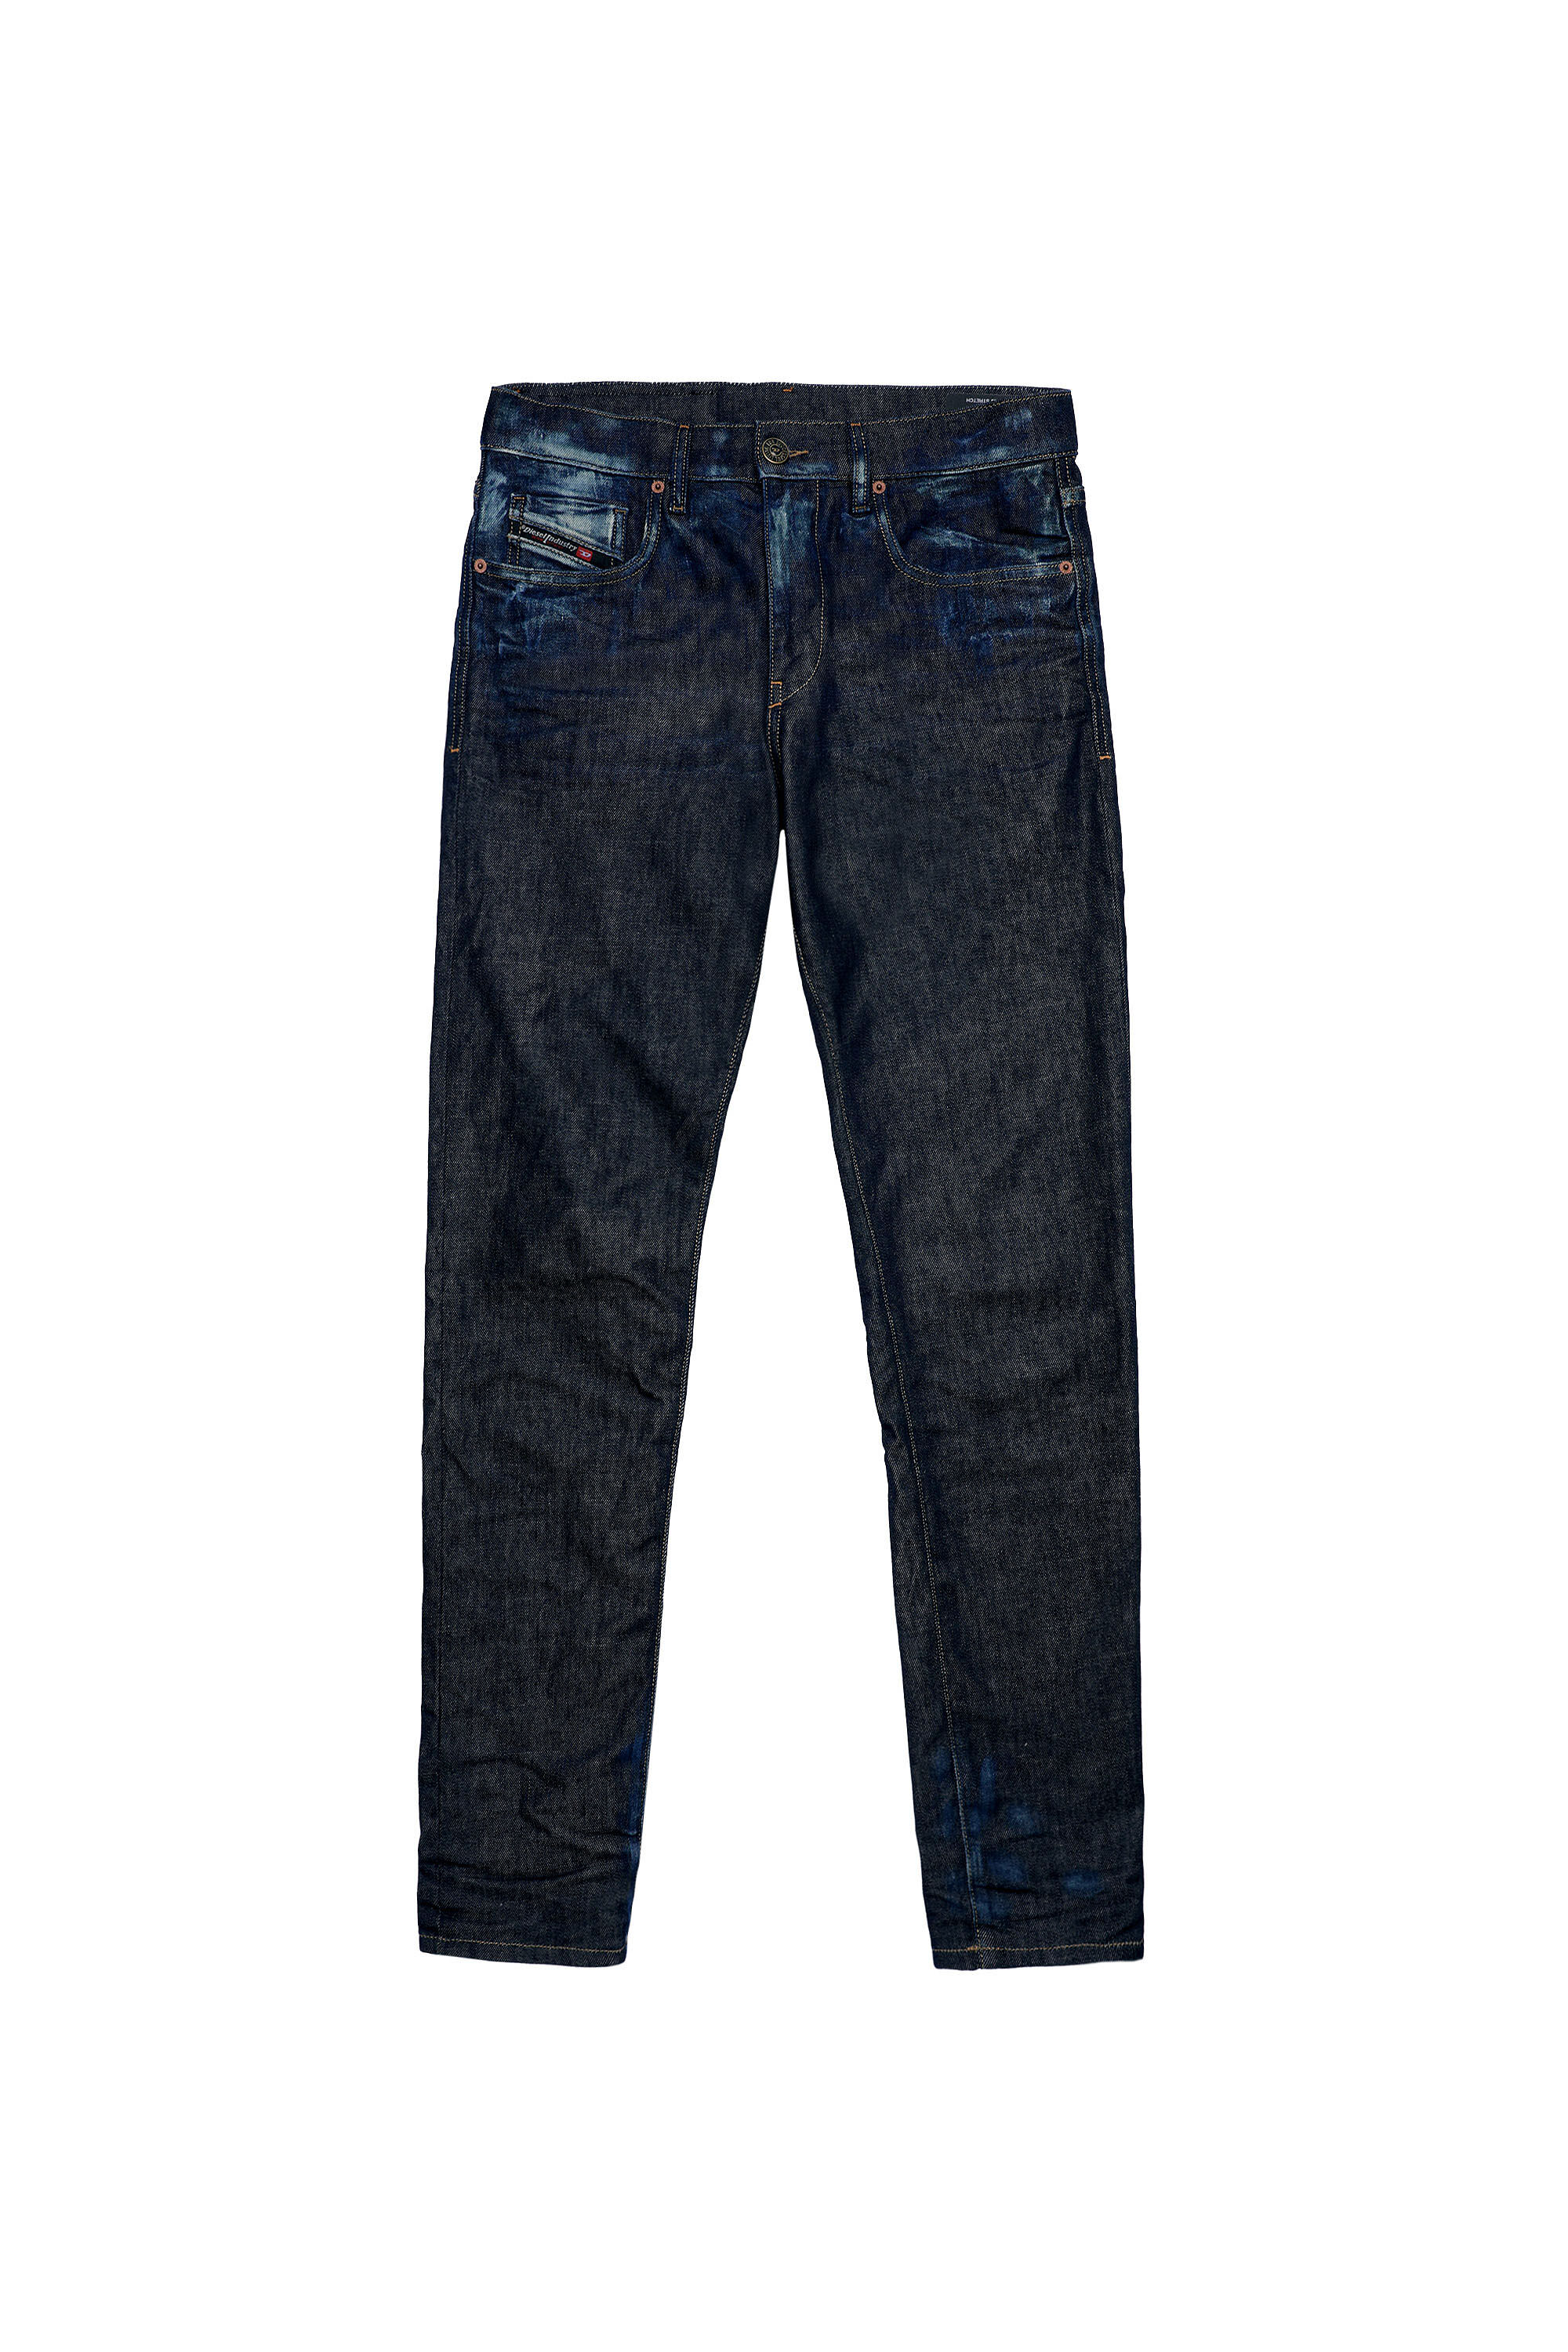 Diesel - 2019 D-STRUKT 09A20 Slim Jeans,  - Image 2